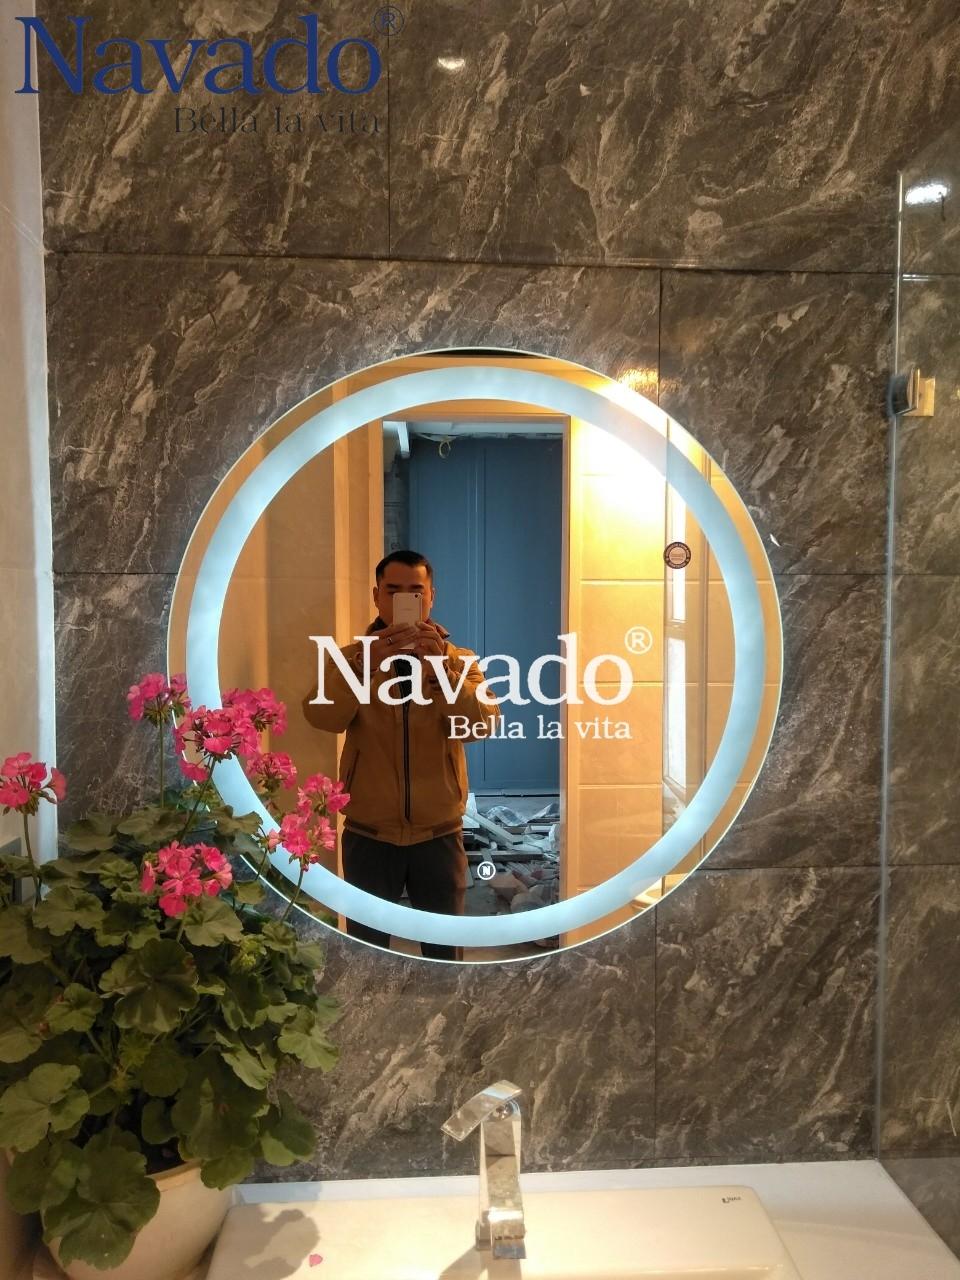 Gương led Navado: Với gương led Navado, bạn sẽ không còn phải lo lắng về ánh sáng yếu khi trang điểm hay thay đổi trang phục. Gương led Navado được trang bị ánh sáng đều và không chói mắt, giúp bạn thấy rõ hơn các chi tiết và tô đậm vẻ đẹp tự nhiên của mình. Hãy để gương led Navado trở thành một người bạn đồng hành với bạn mỗi ngày.